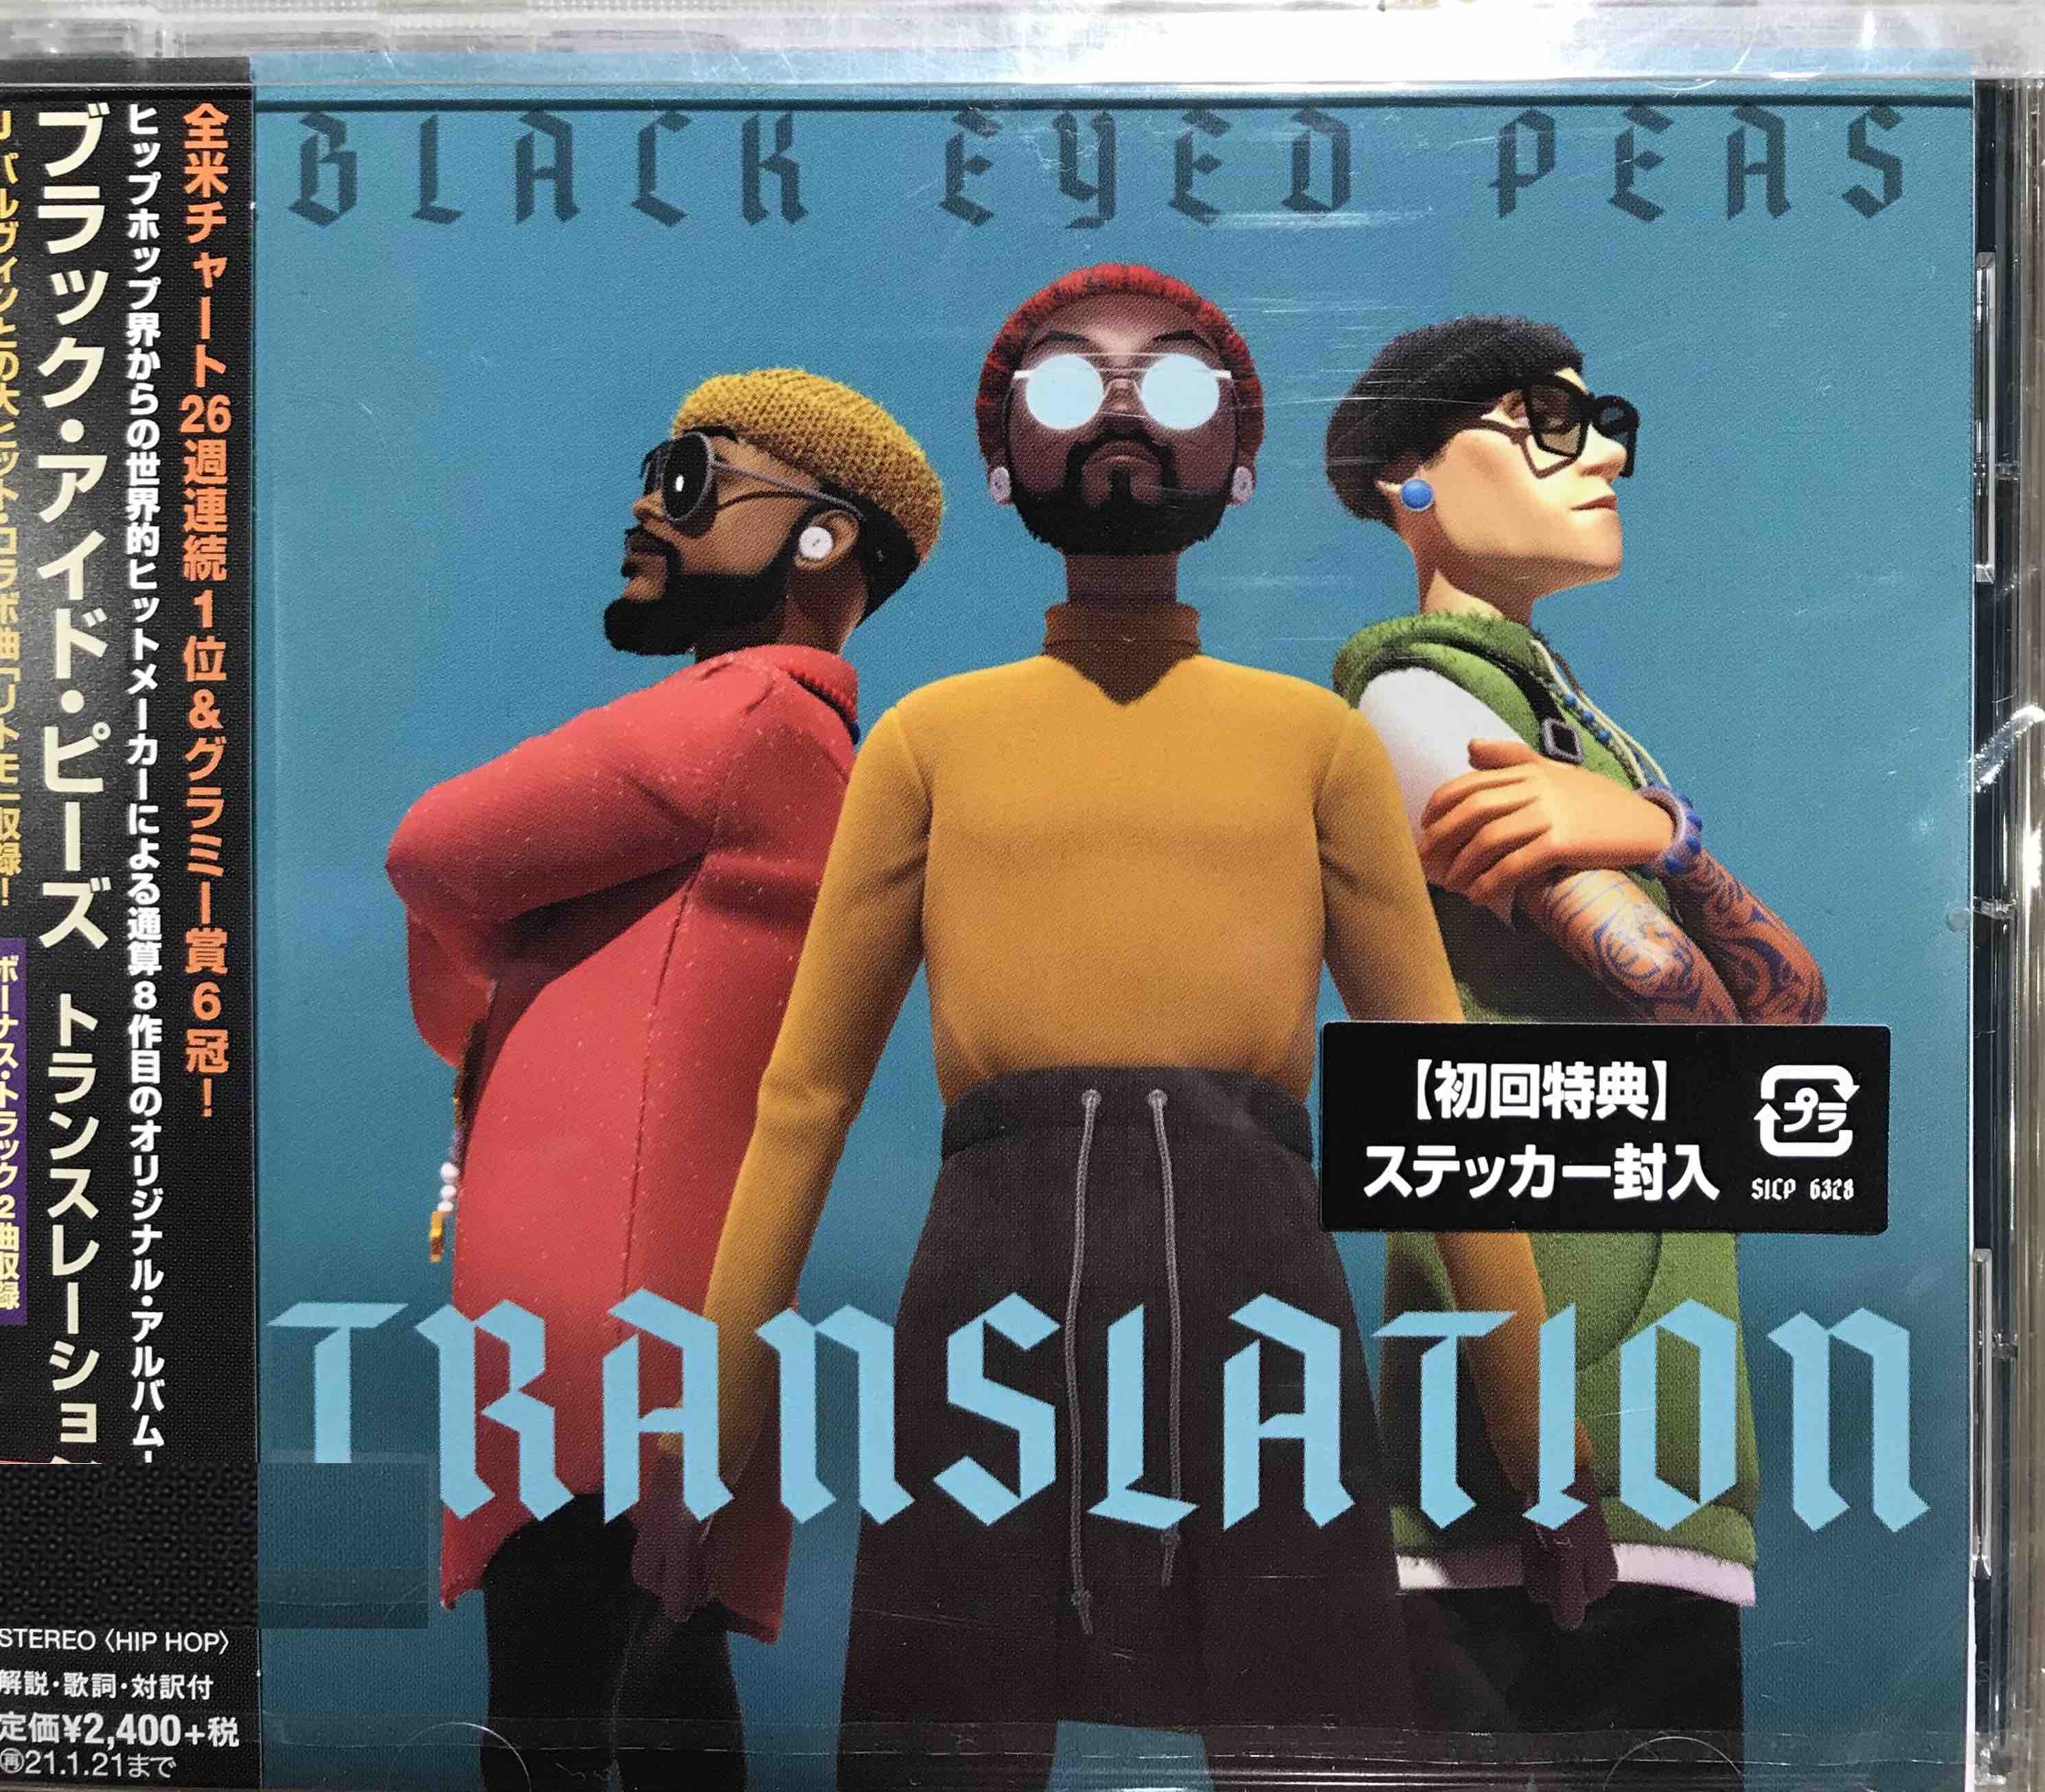 Black Eyed Peas ‎– Translation